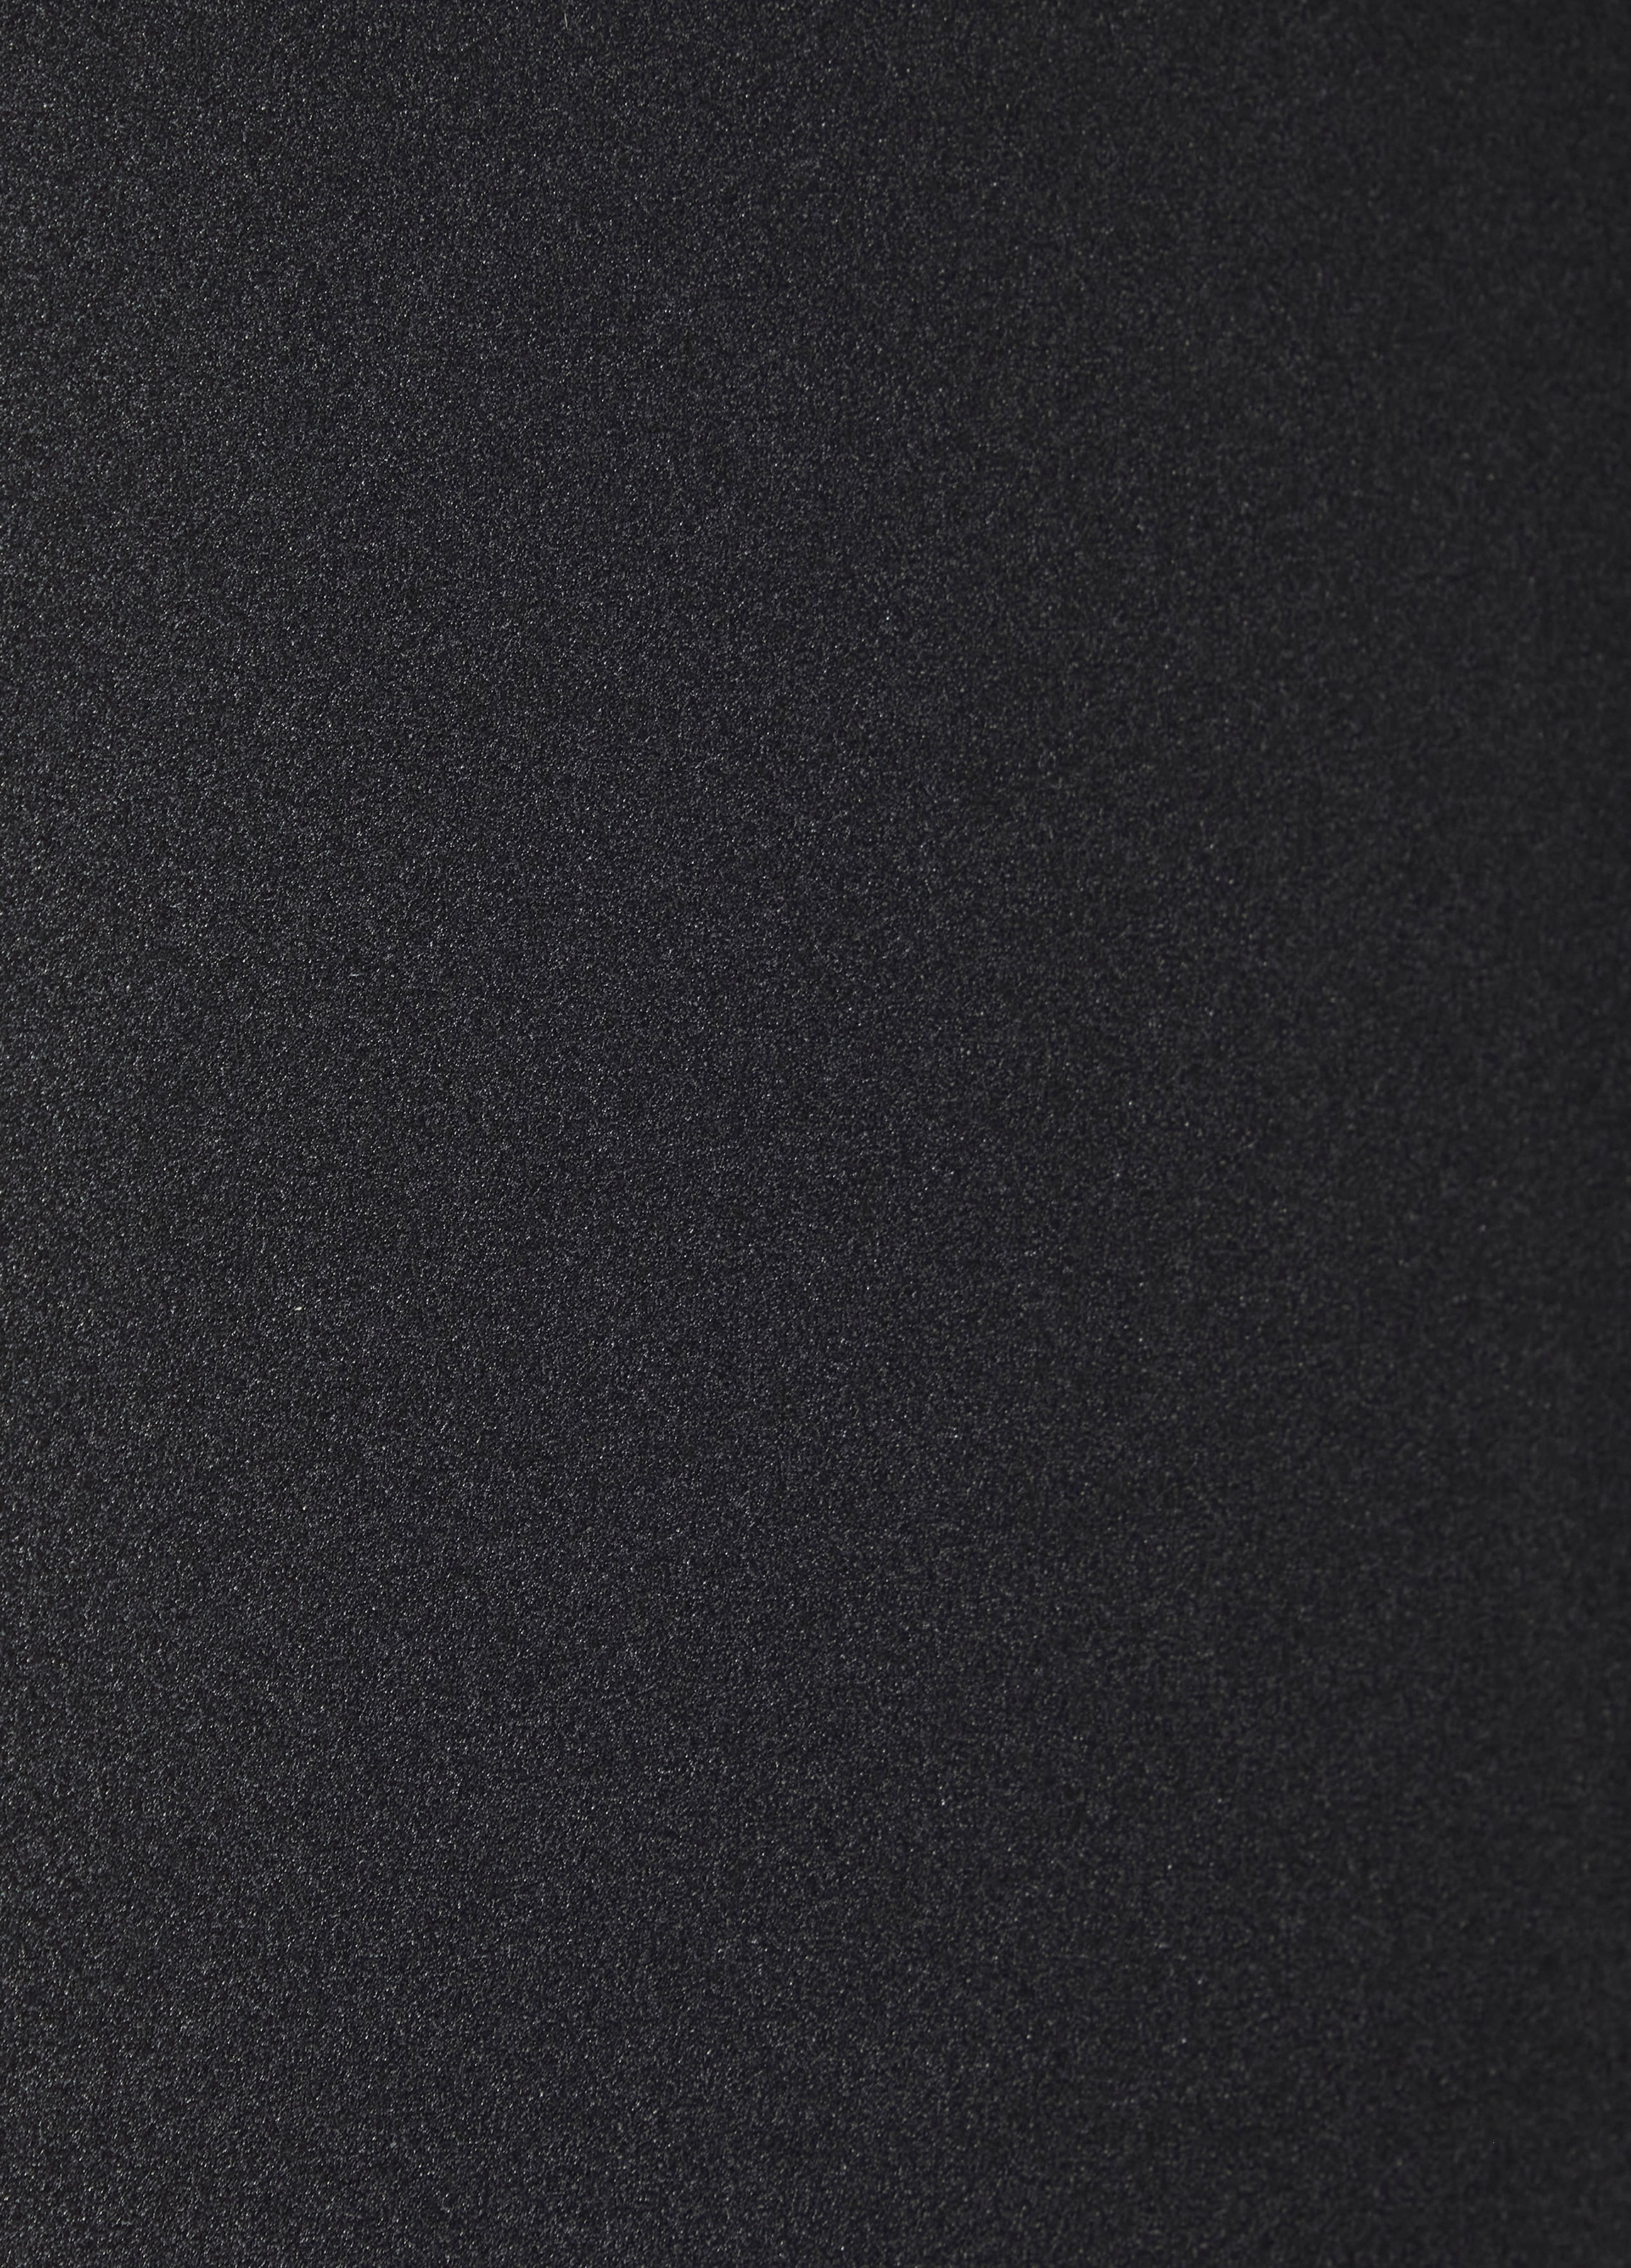 Hisense Side-by-Side »RS677N4A«, RS677N4AFC, 178,6 cm hoch, 91 cm breit mit  3 Jahren XXL Garantie